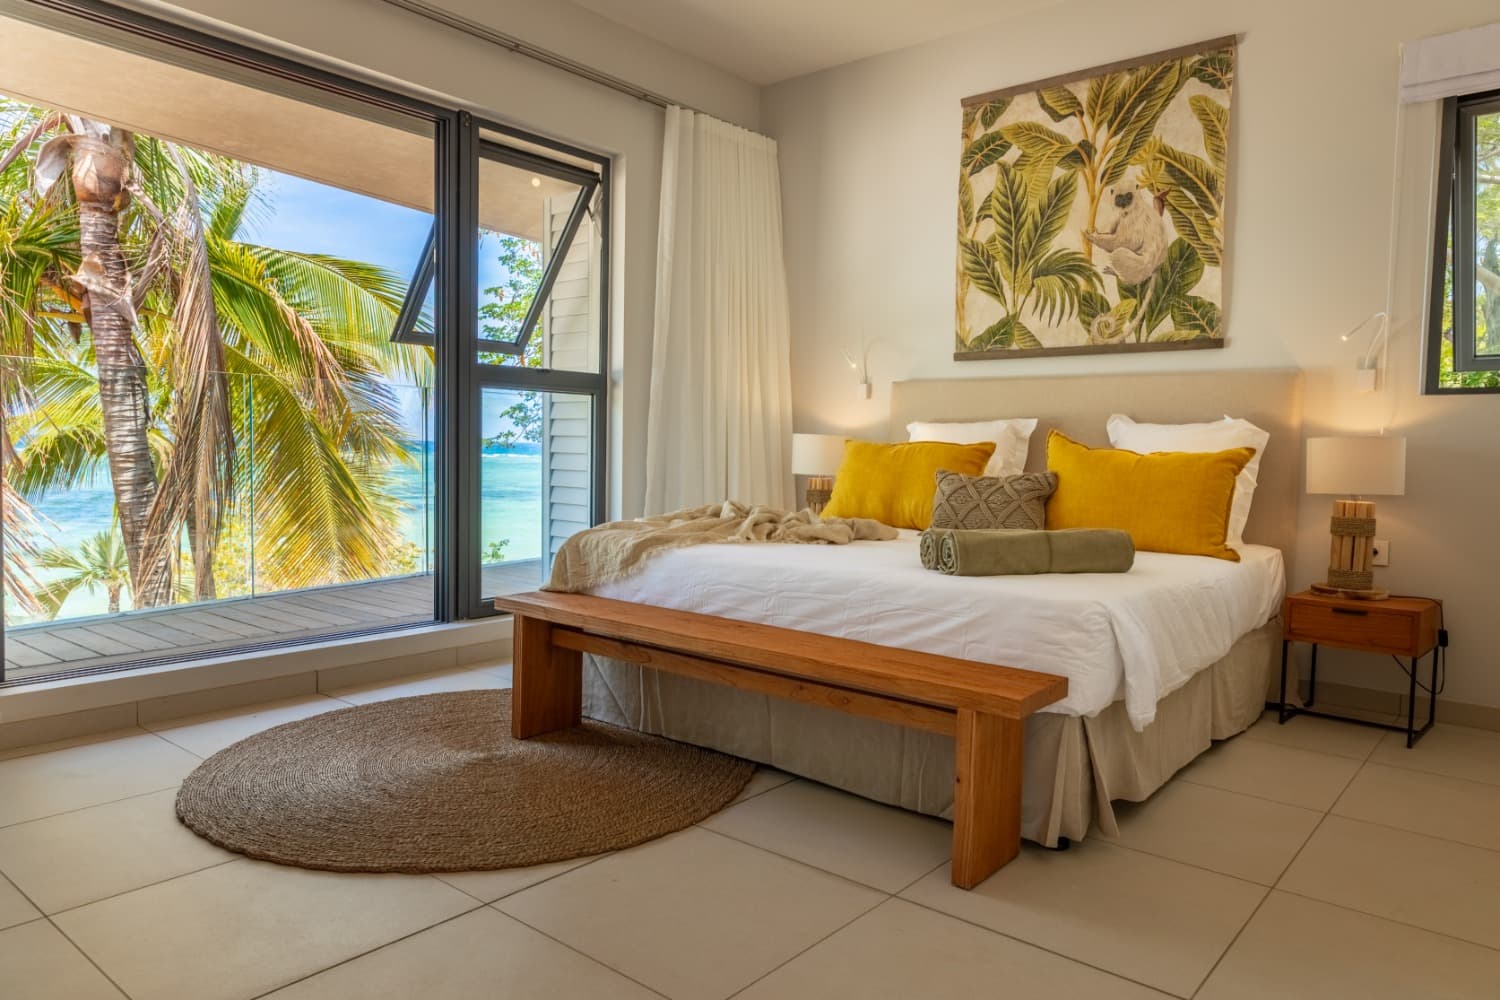 Soukromá Vila Manta Cove luxusní dovolená Mauricius